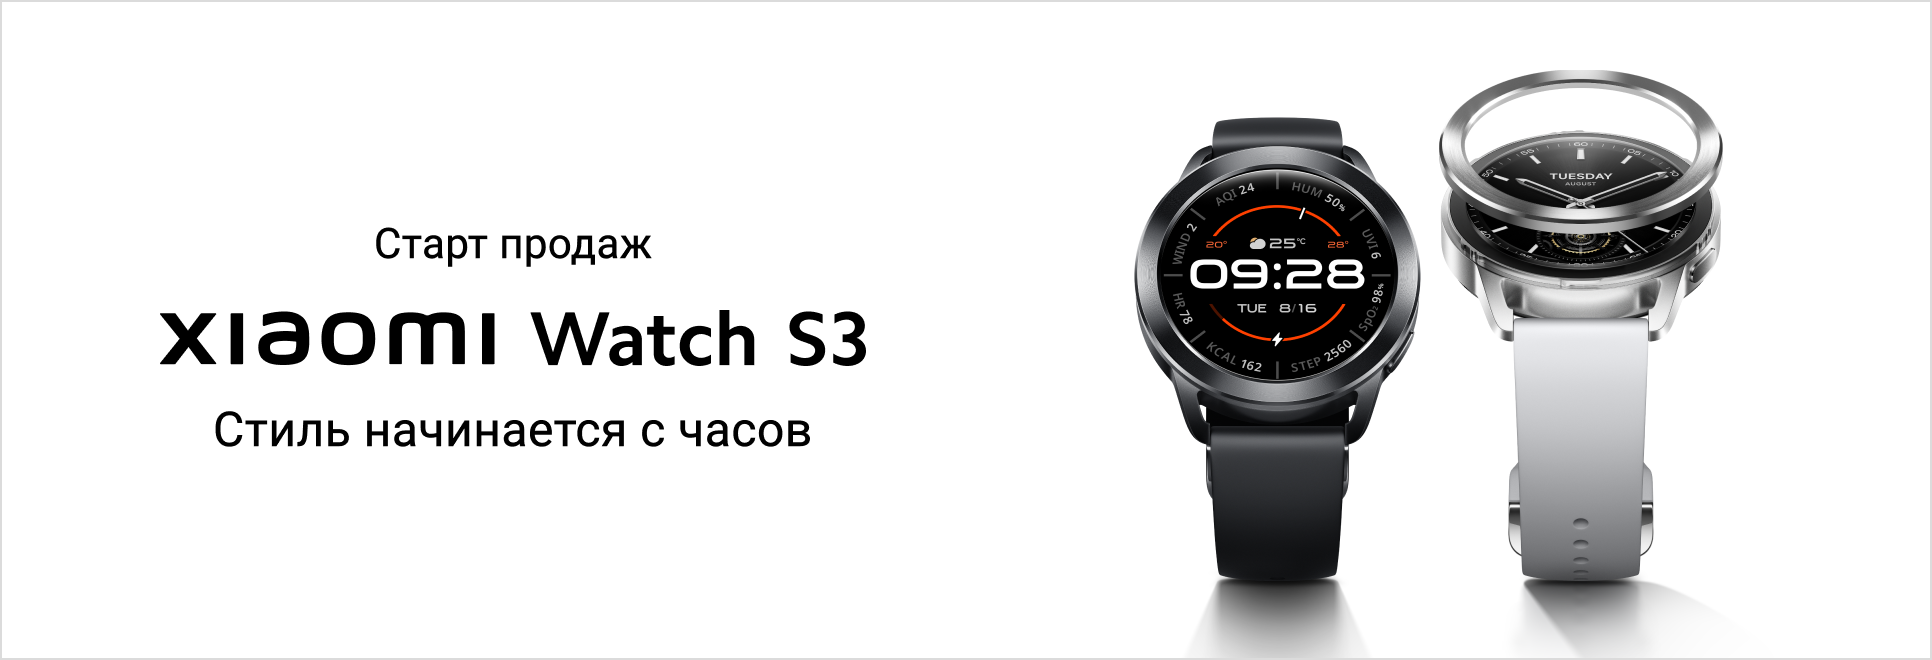 Старт продаж Xiaomi Watch S3